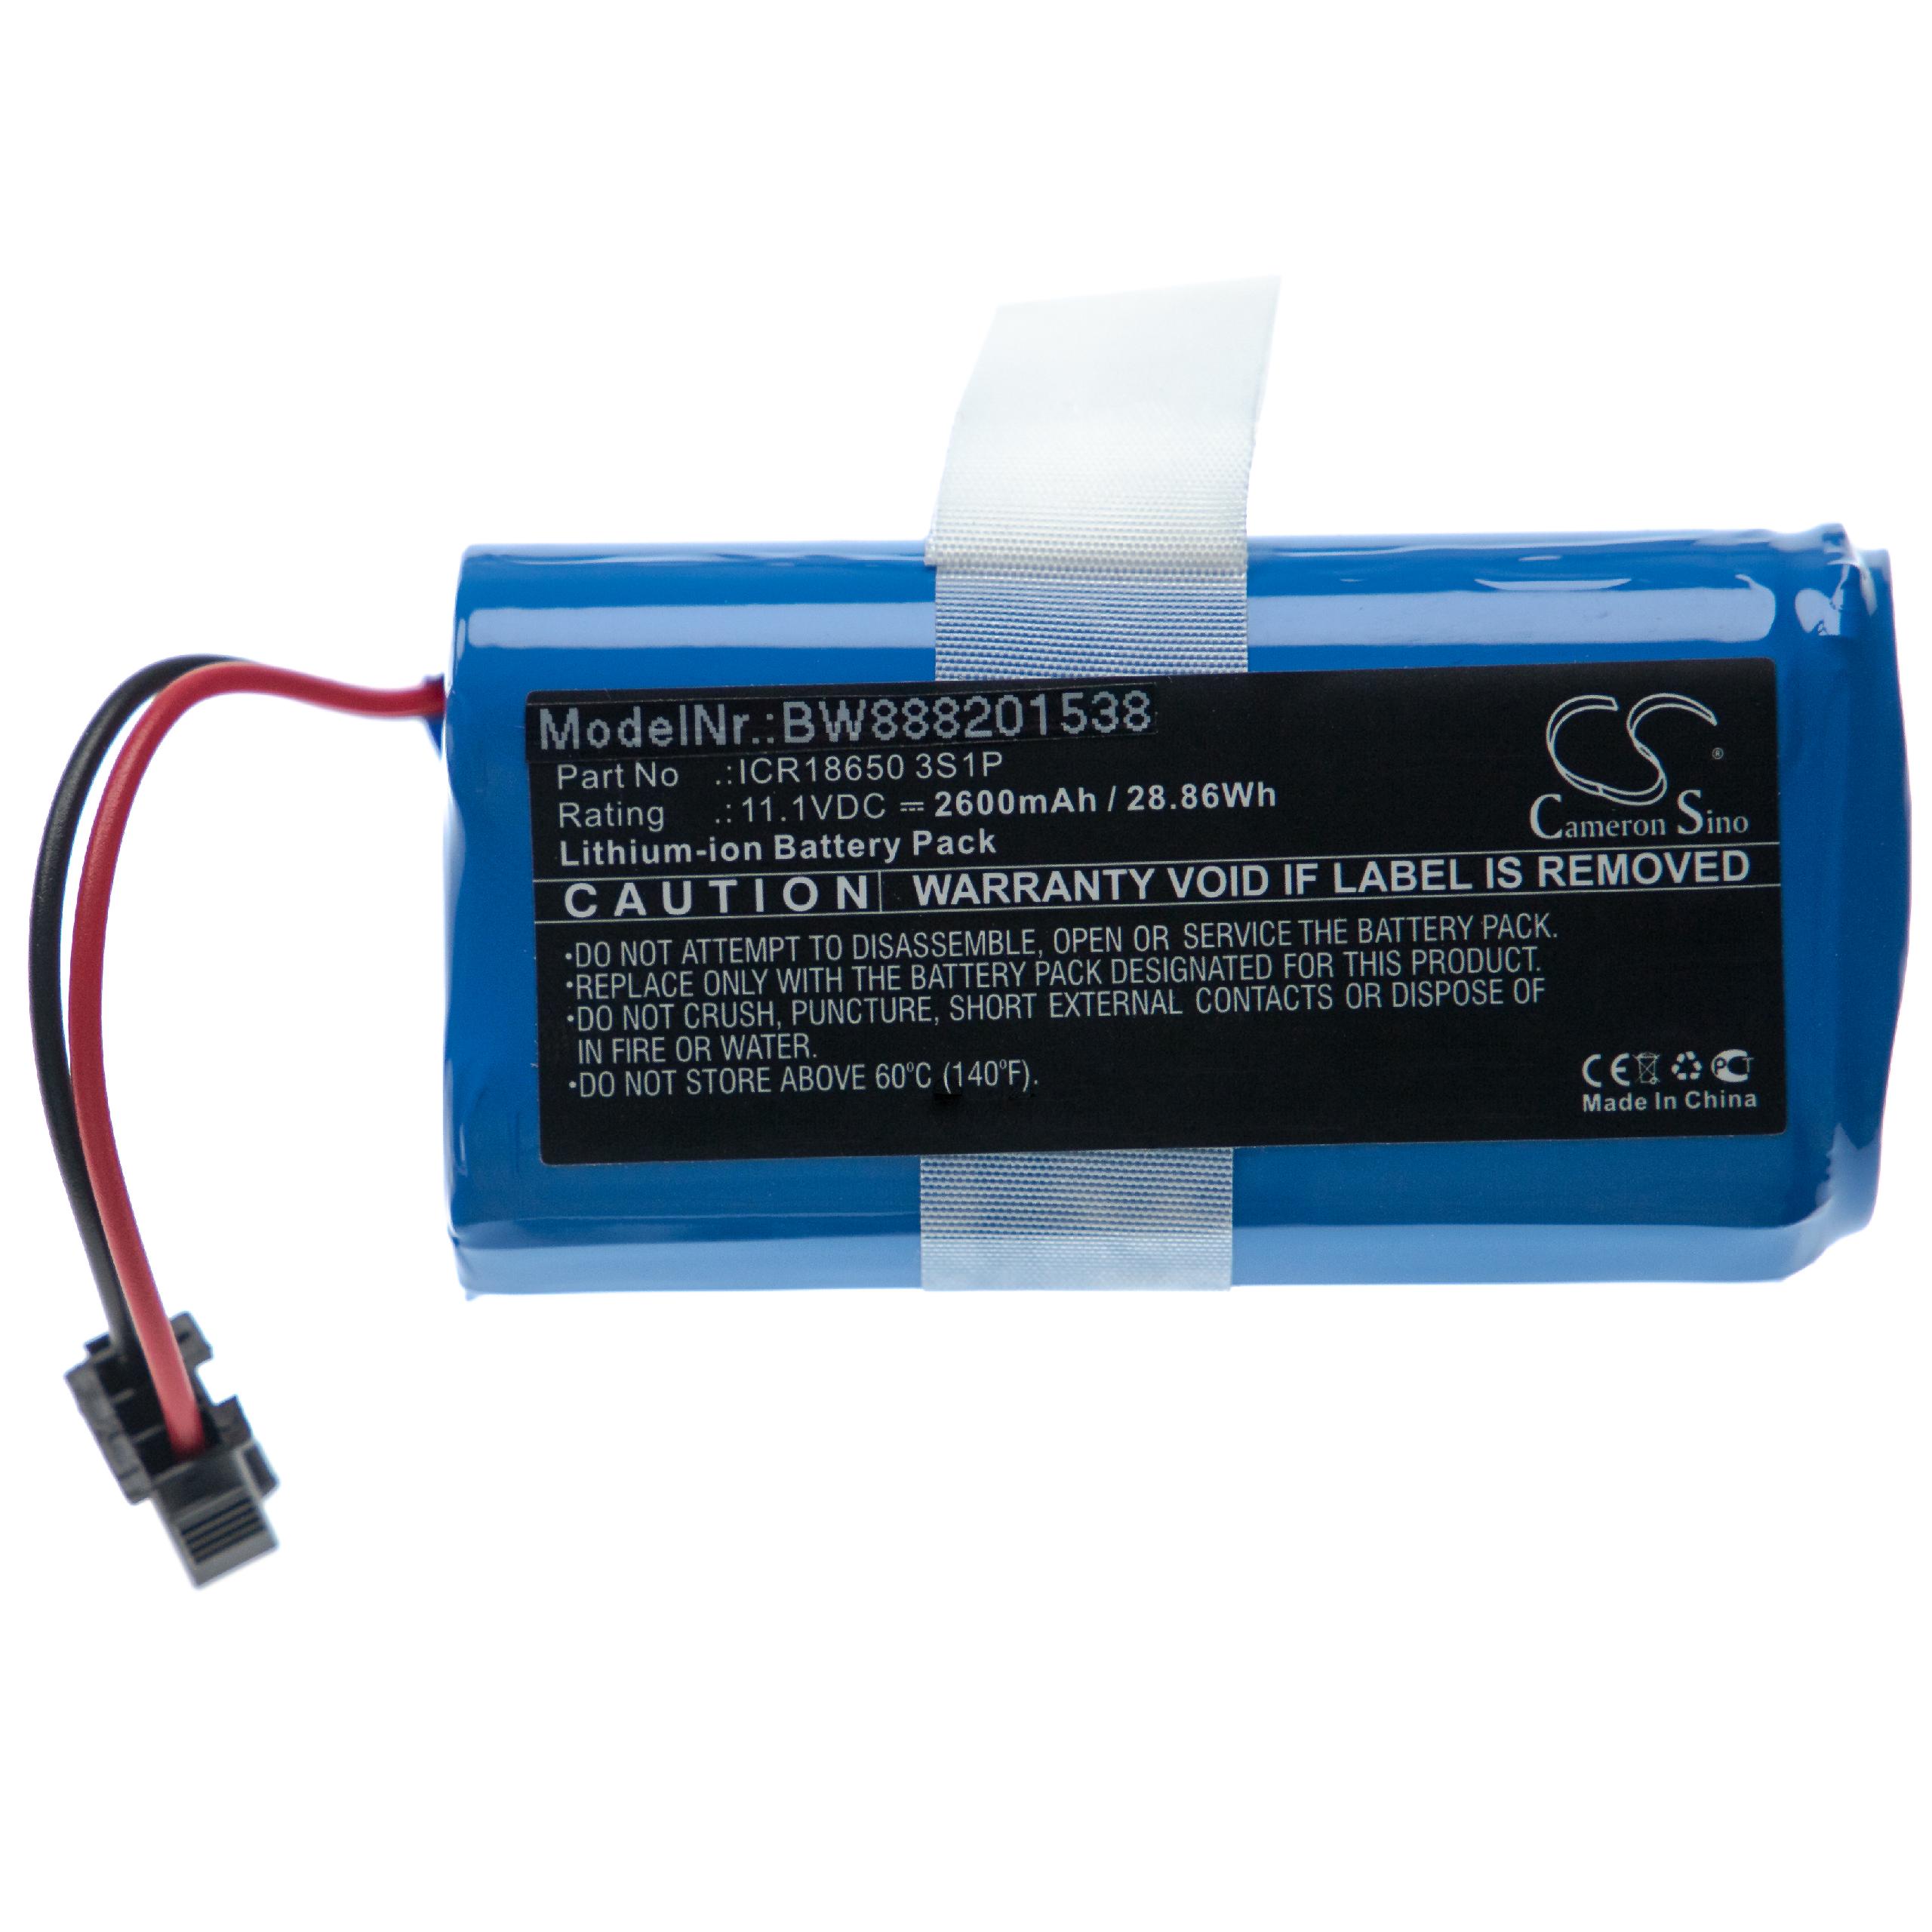 Batterie remplace Ecovacs UR18650ZY-3S1P-AAP pour robot aspirateur - 2600mAh 10,8V Li-ion